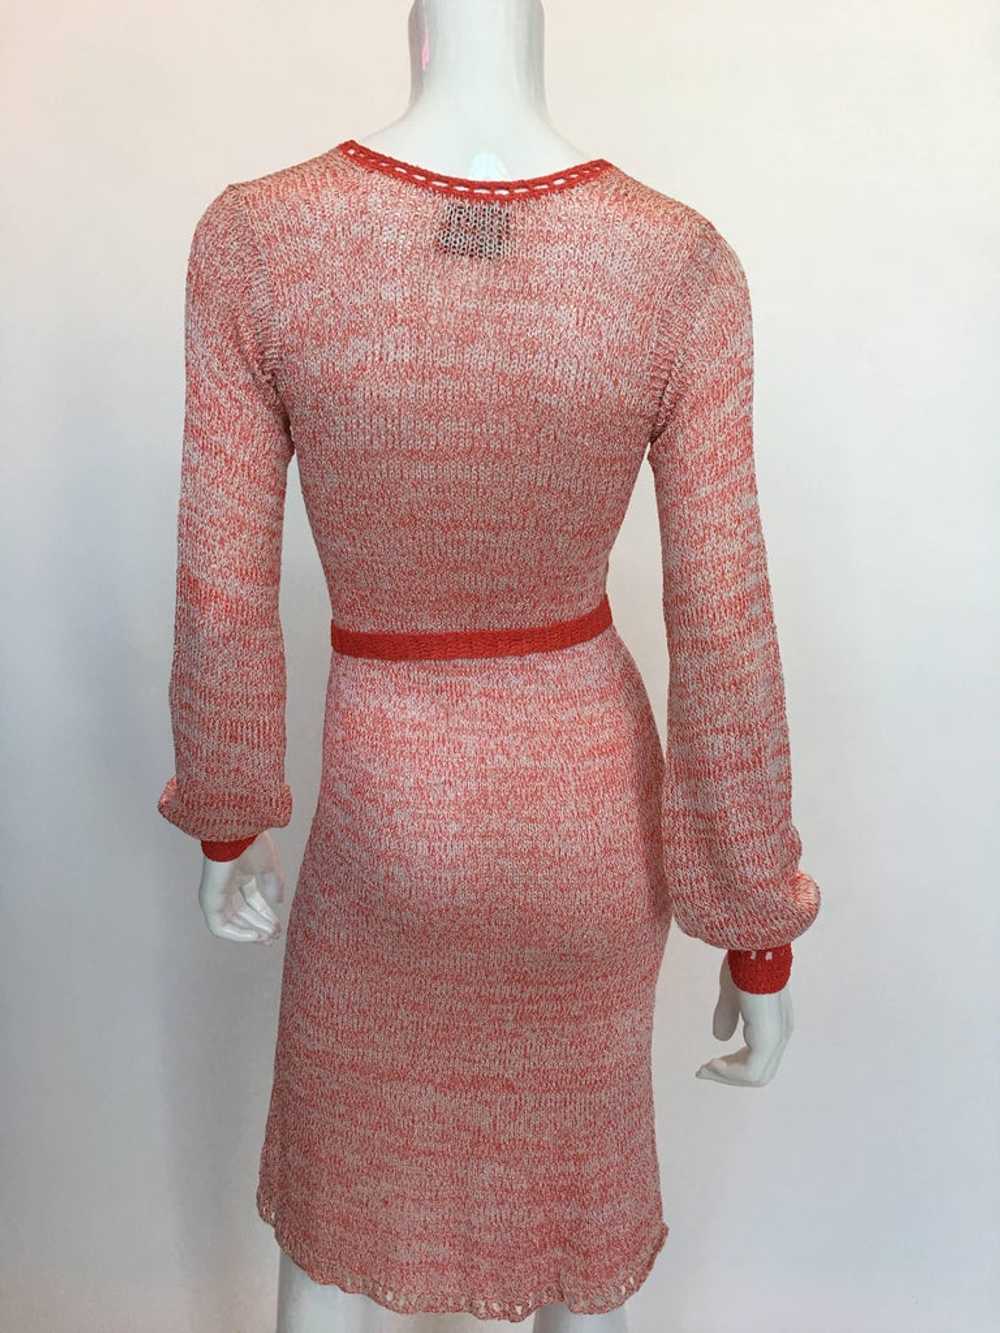 Helga Howie 1970's Knit Space Dye Dress - image 9